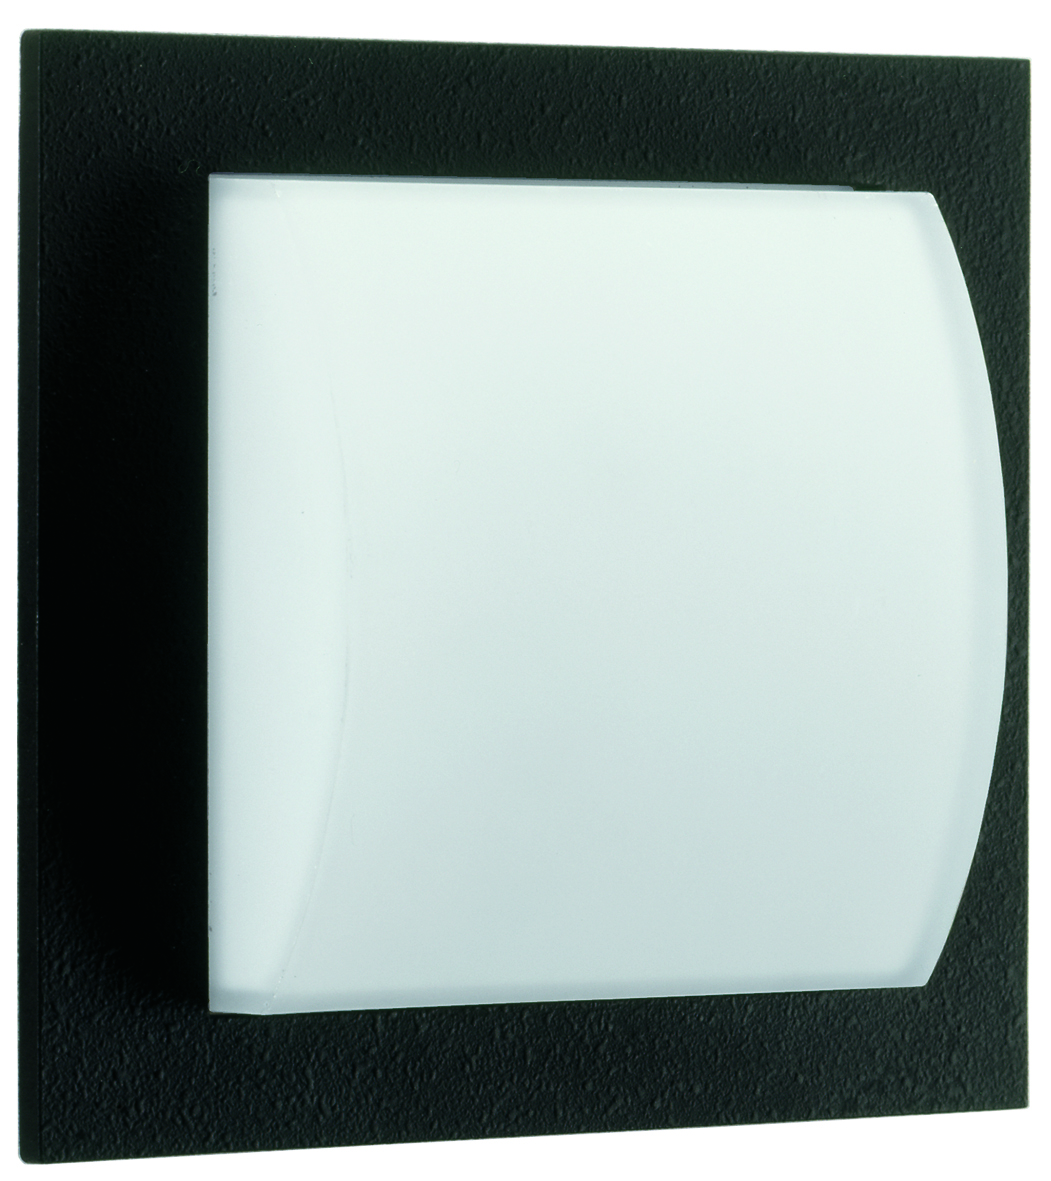 Albert LeuchtenWand- und Deckenleuchte Typ Nr. 6209 - Farbe: schwarz, für 1 x Lampe, E27